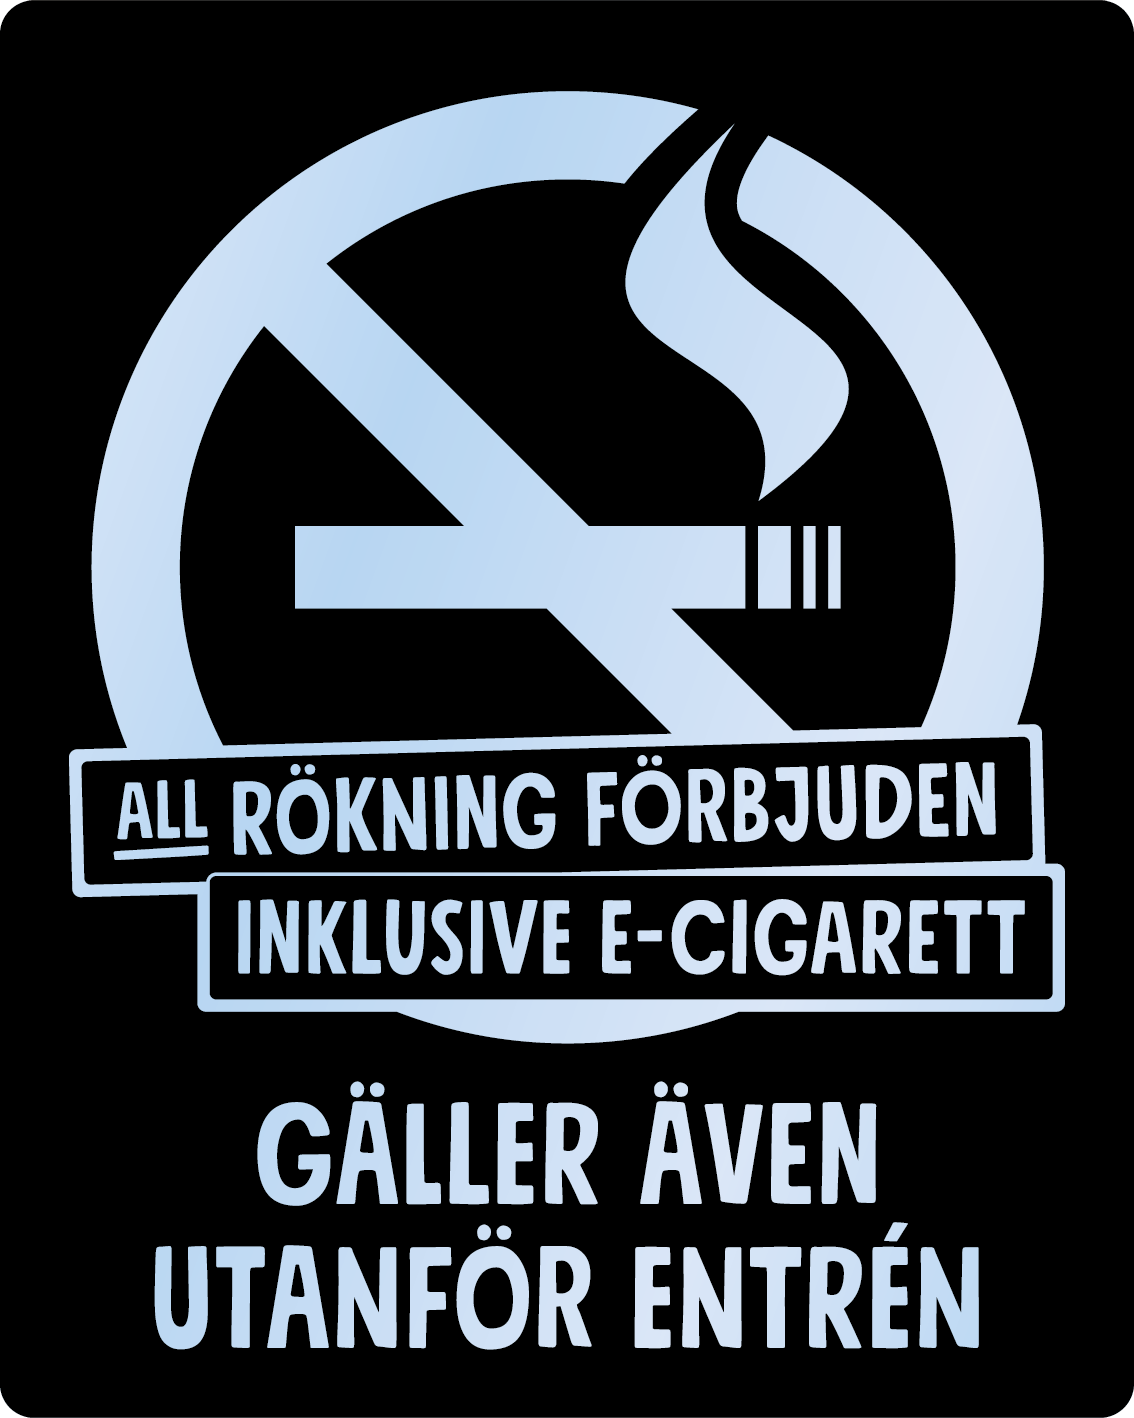 Bild rökförbudsskylt 03A15: Valfri PMS* / Transparent